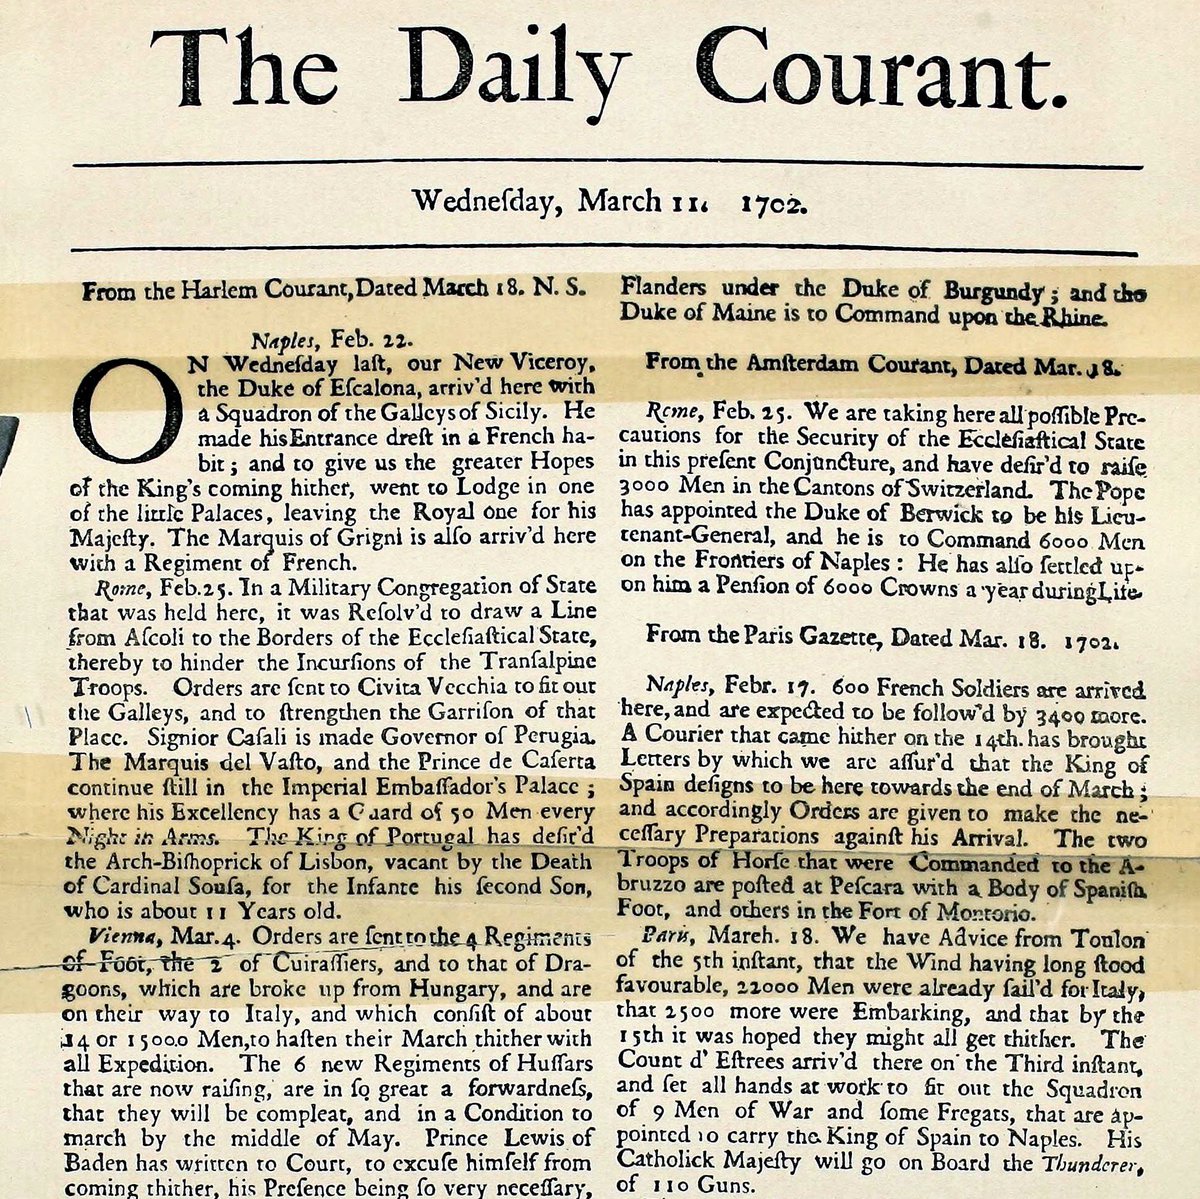 Debutta il Daily Courant, primo quotidiano al mondo